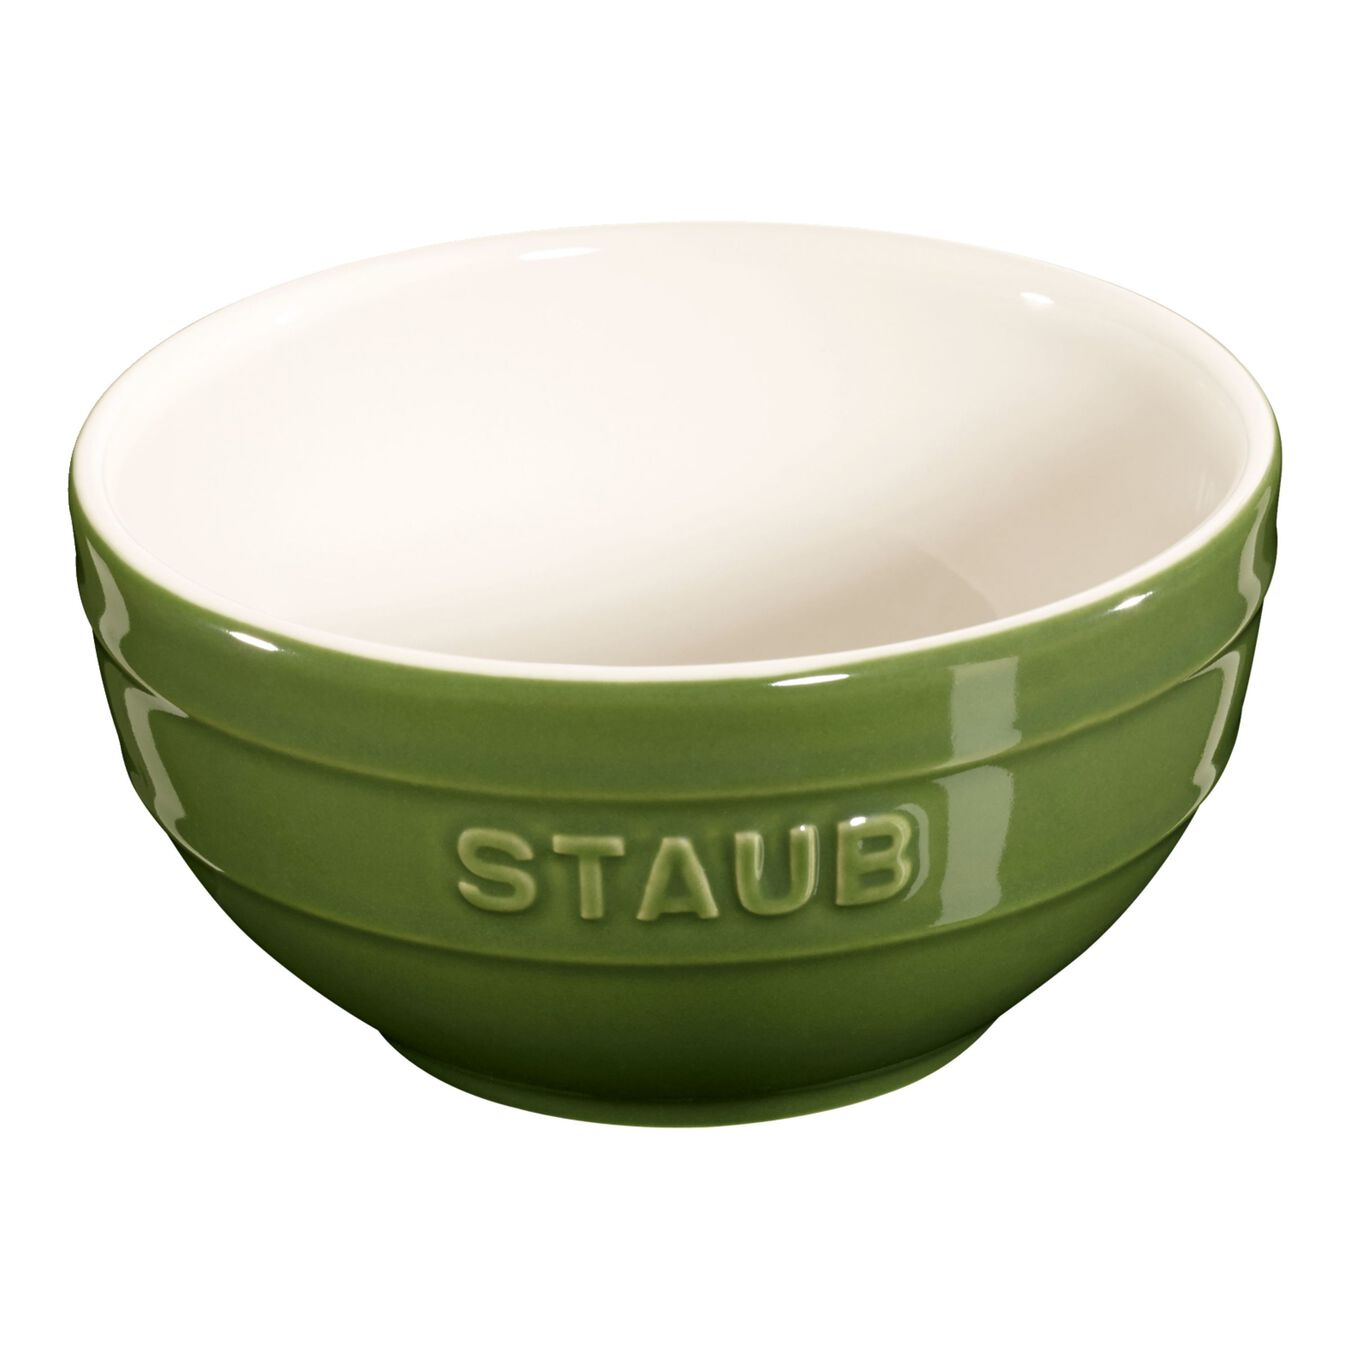 12 cm round Ceramic Bowl basil-green,,large 1